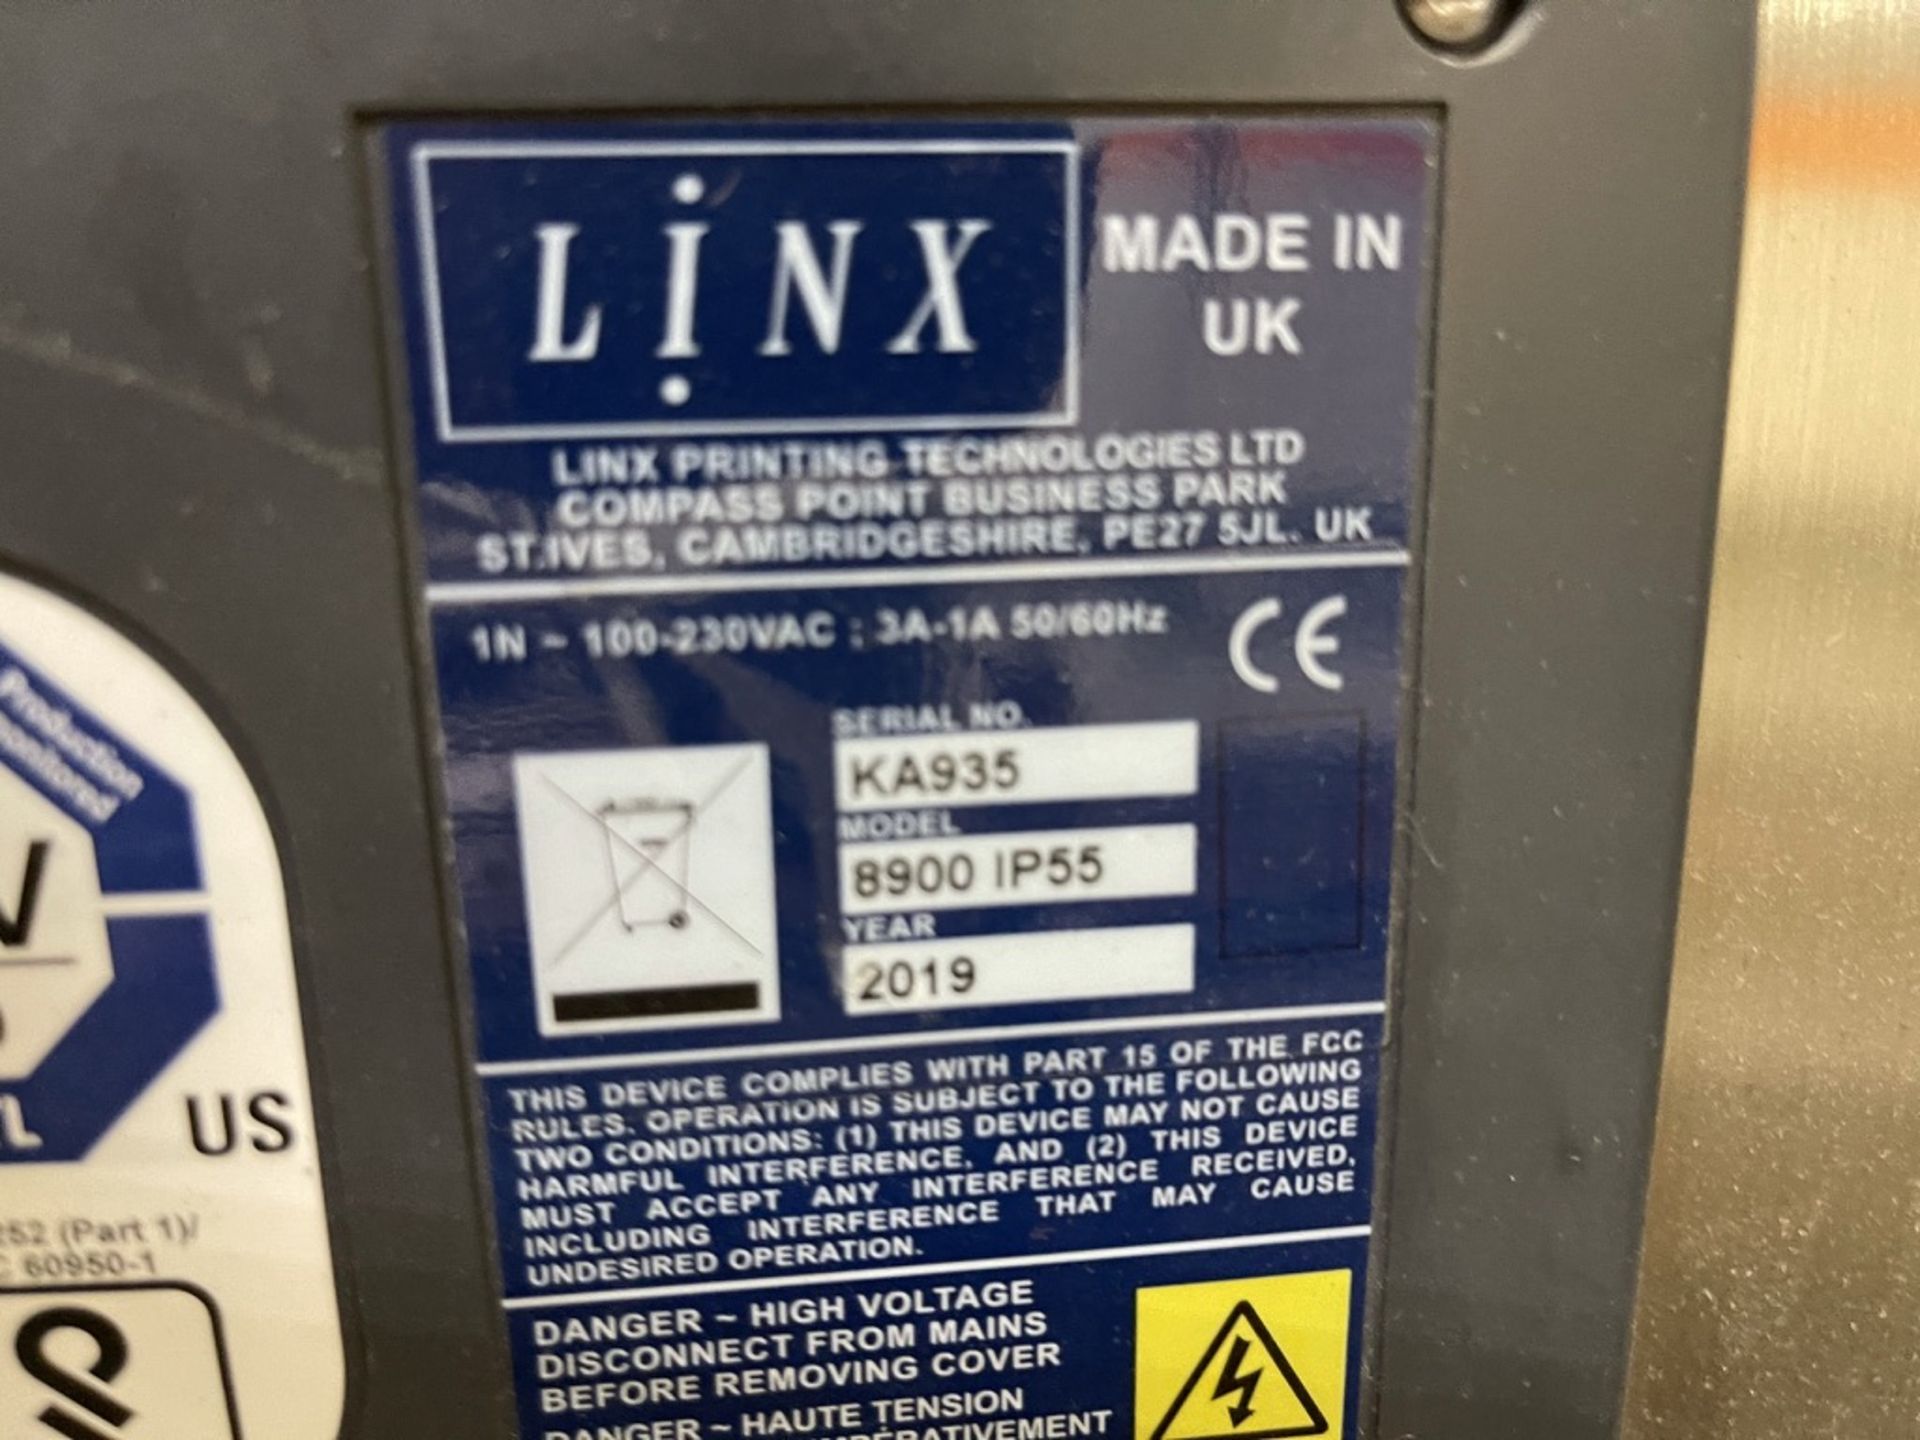 2019 LINX DATE CODER, MODEL 8900 IP55, S/N KA935 - Image 6 of 6